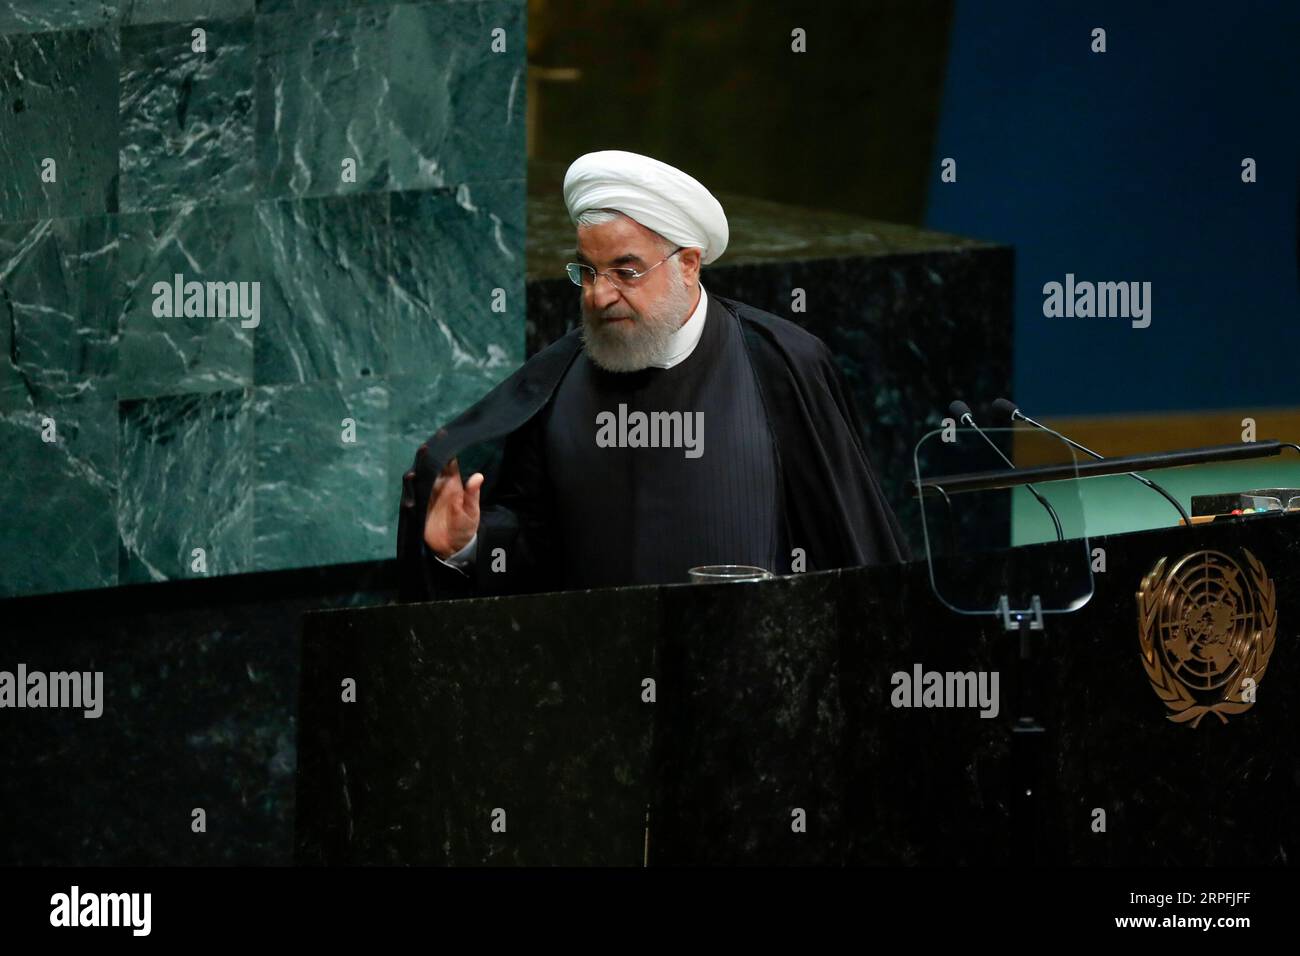 190925 -- NATIONS UNIES, 25 septembre 2019 -- le président iranien Hassan Rouhani part après avoir pris la parole lors du débat général de la 74e session de l'Assemblée générale des Nations Unies au siège des Nations Unies à New York, le 25 septembre 2019. Rouhani mercredi a exclu les négociations avec les États-Unis à moins que ces derniers ne lèvent d’abord les sanctions contre son pays. ONU-ASSEMBLÉE GÉNÉRALE-DÉBAT GÉNÉRAL-IRAN LIXMUZI PUBLICATIONXNOTXINXCHN Banque D'Images